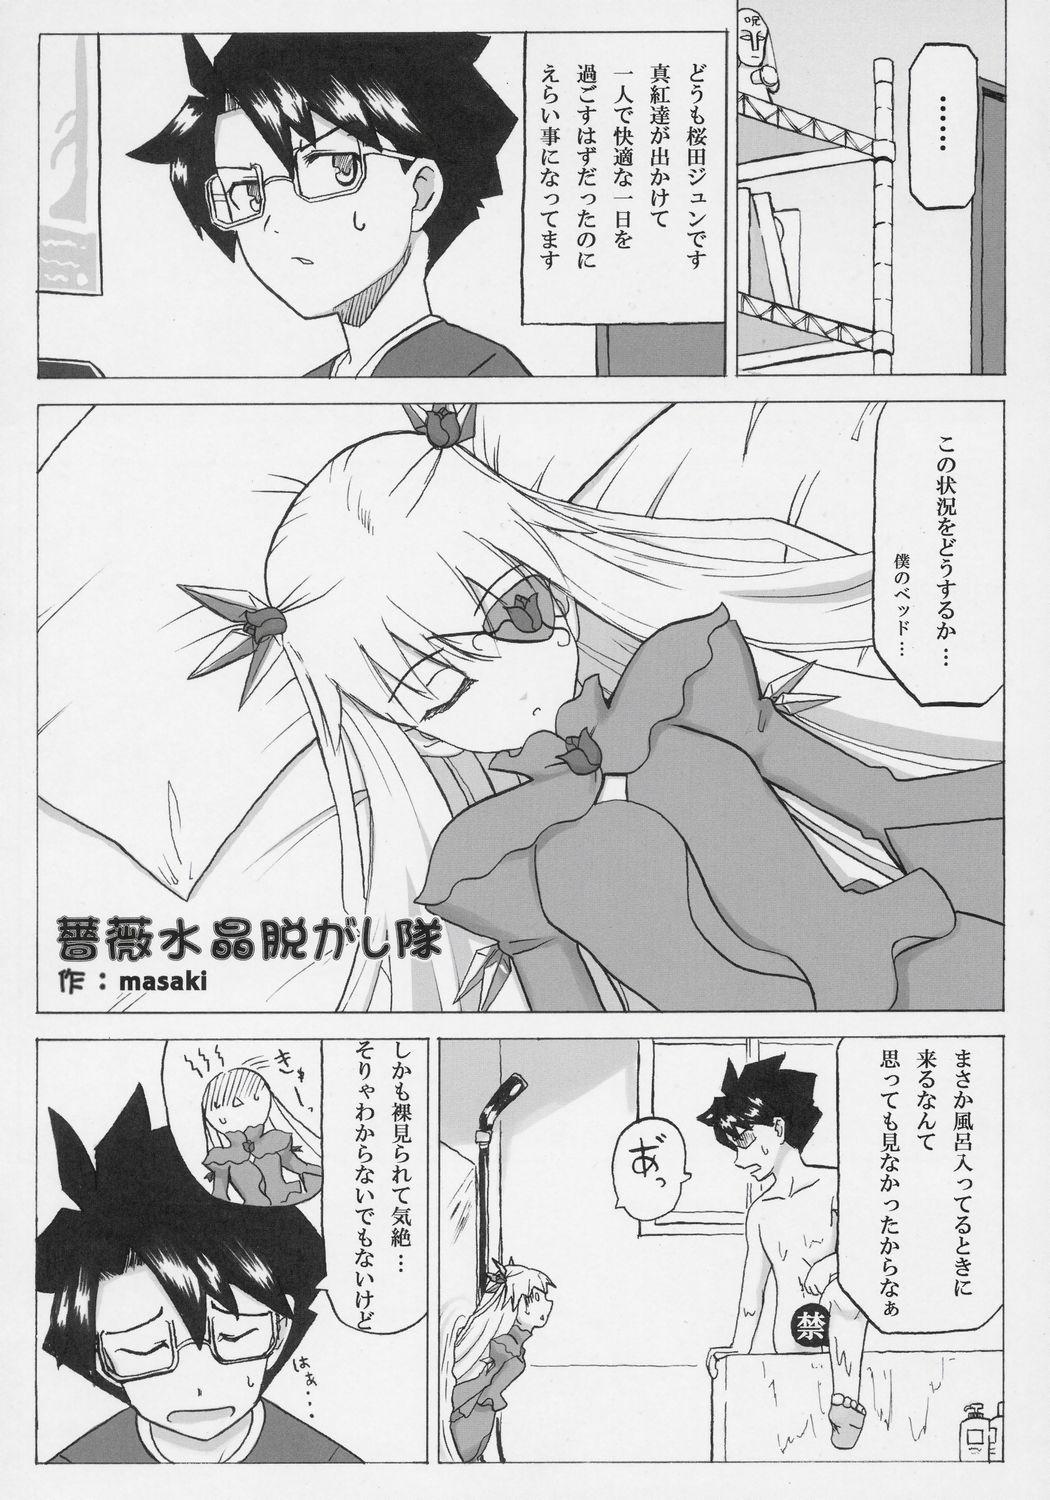 Pool - Barabara wo okashitai no hon - Rozen maiden Erotica - Page 7